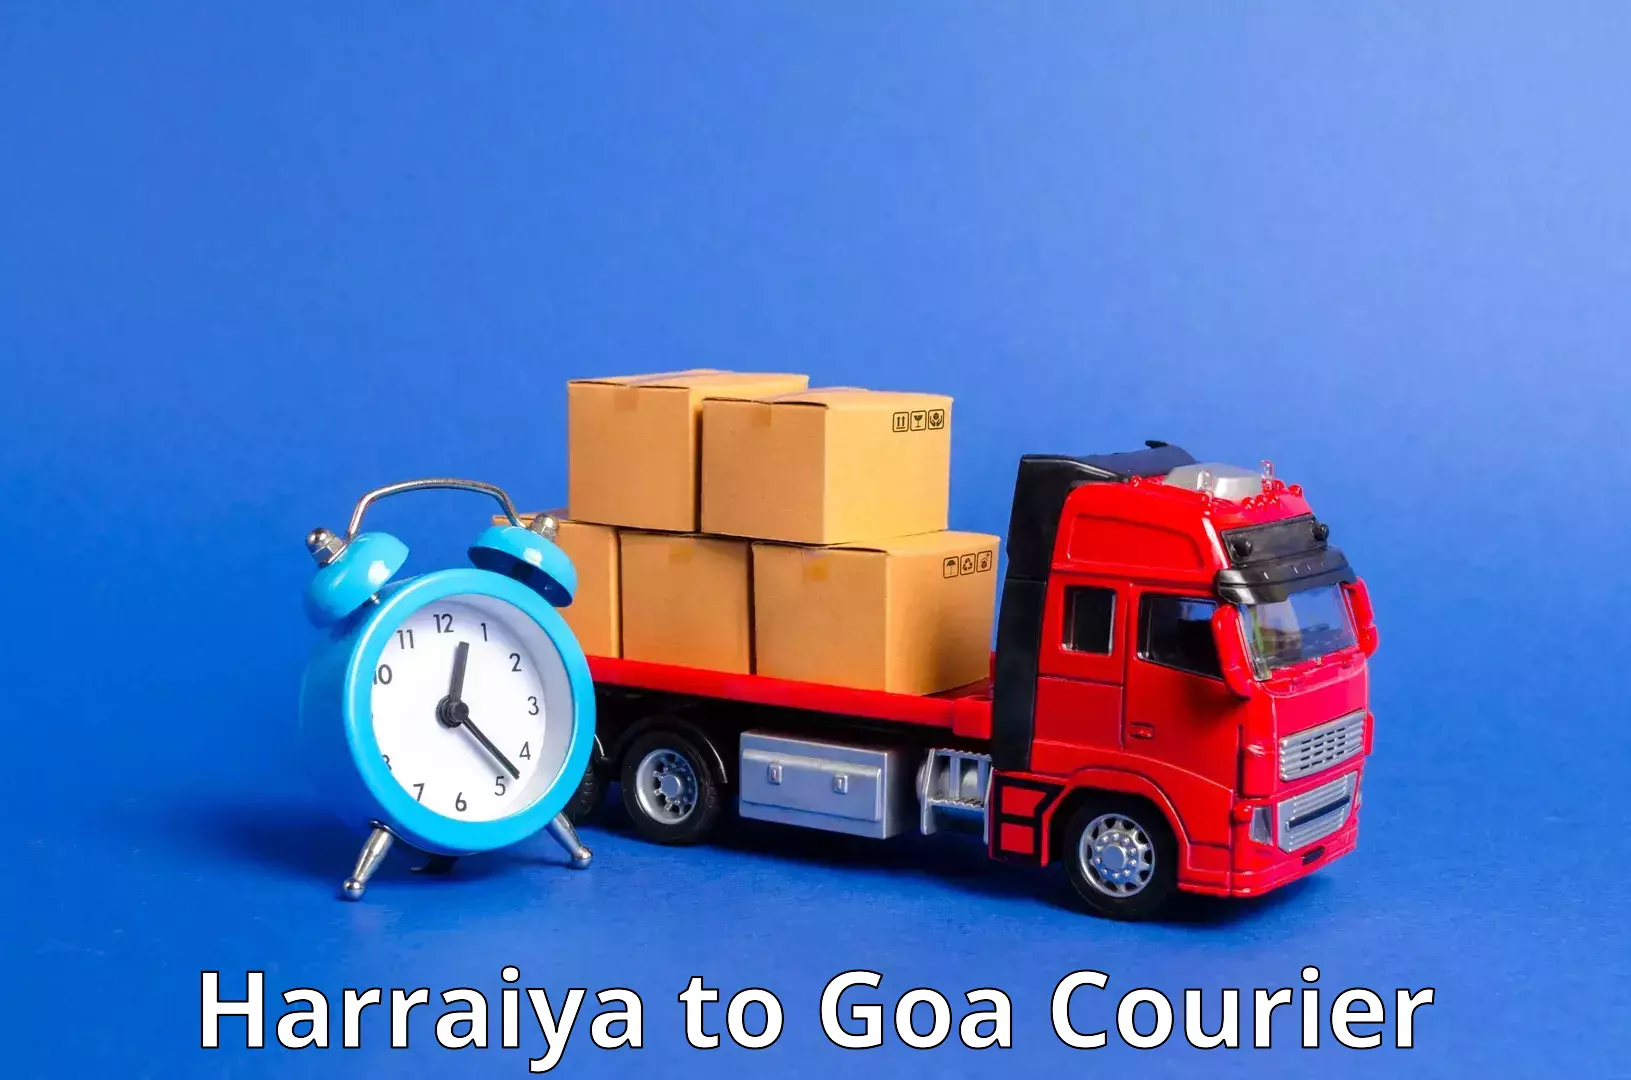 High-speed parcel service Harraiya to Panjim